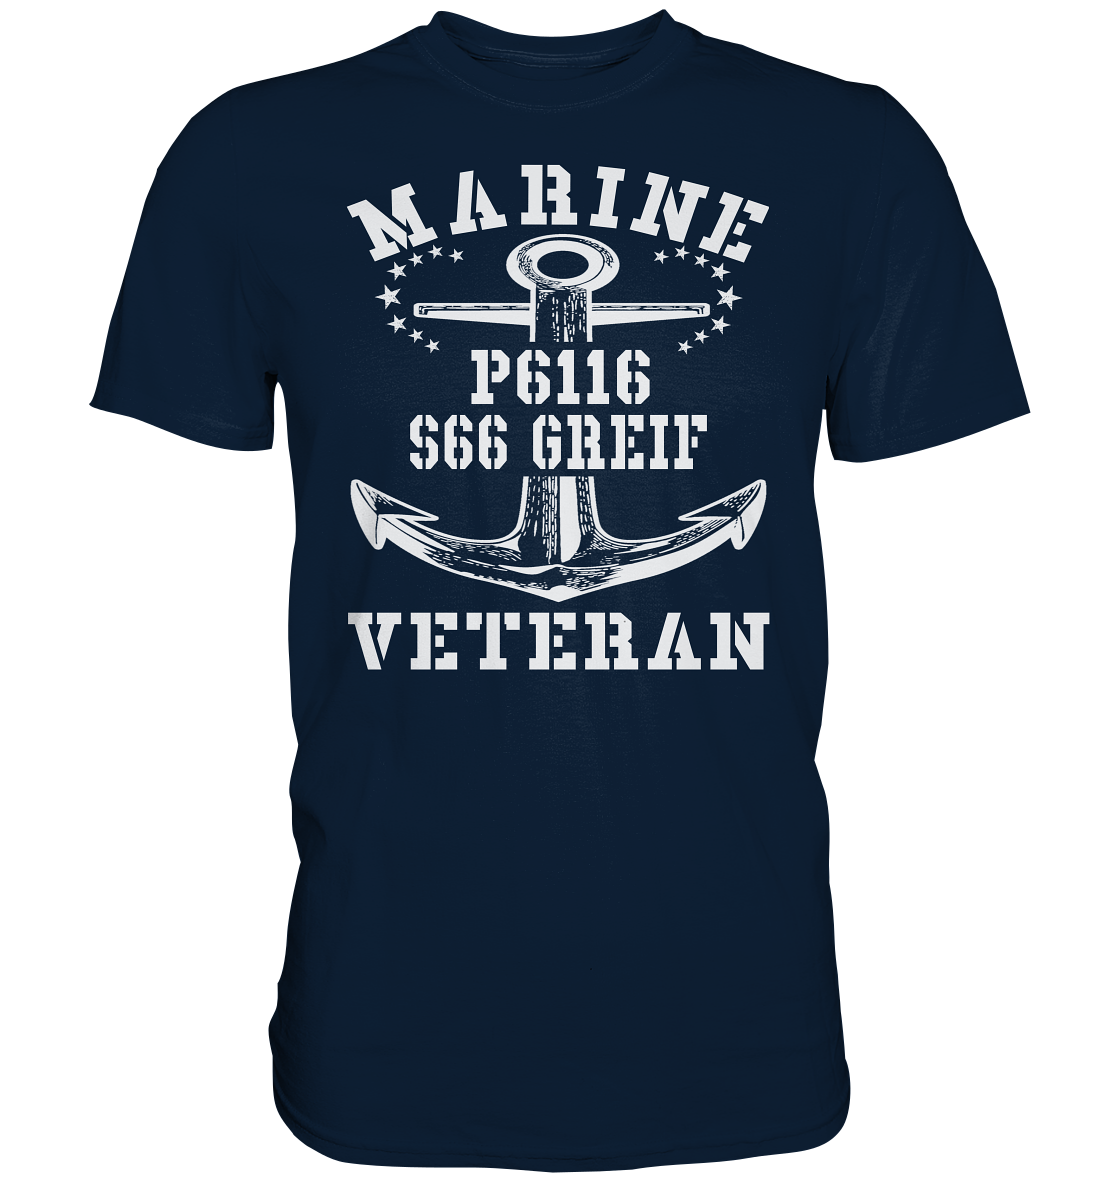 FK-Schnellboot P6116 GREIF Marine Veteran - Premium Shirt